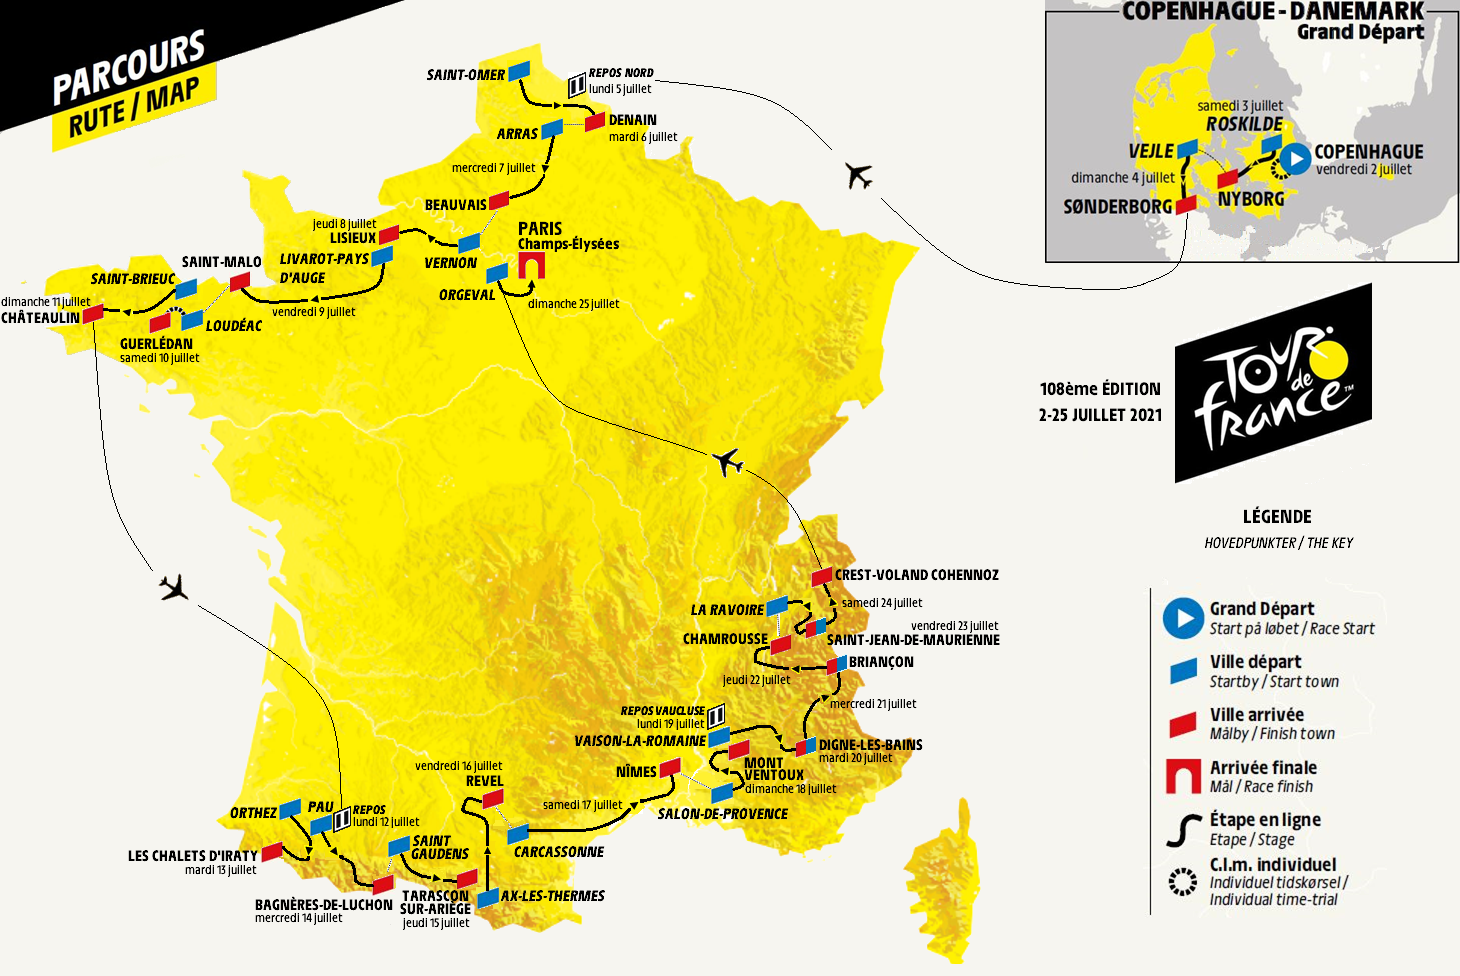 [Concours] Tour de France 2022 - Résultats p.96 - Page 9 - Le